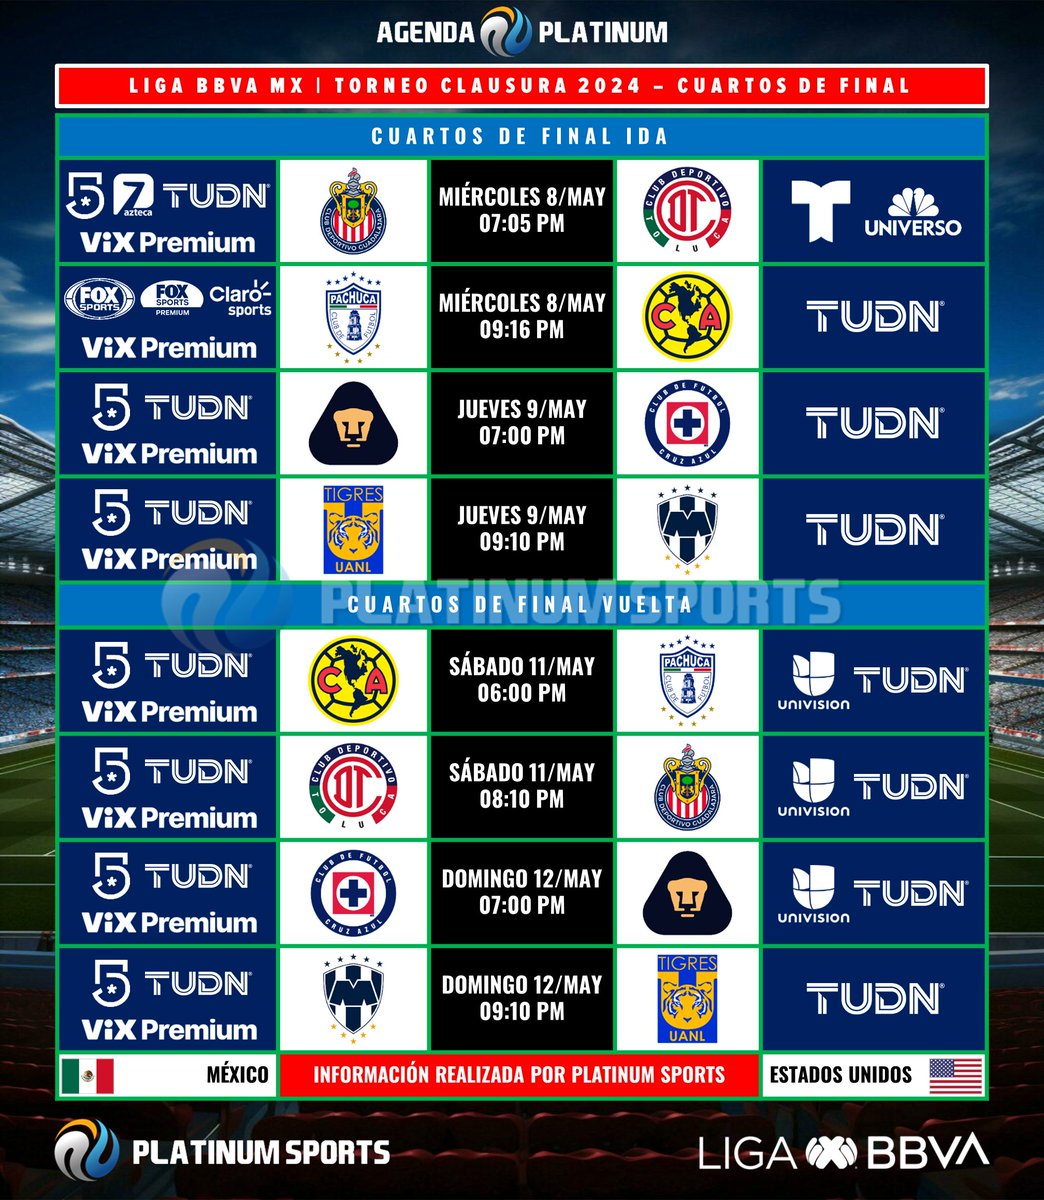 ⚽️ #AgendaPLATINUM 
🇲🇽 #LigaBBVAMX Clausura 2024 - Cuartos de Final

⏰📺 Horarios y transmisiones para México y Estados Unidos.
⚠️ Sujeto a cambios. 

#Clausura2024 - #4tosDeFinal